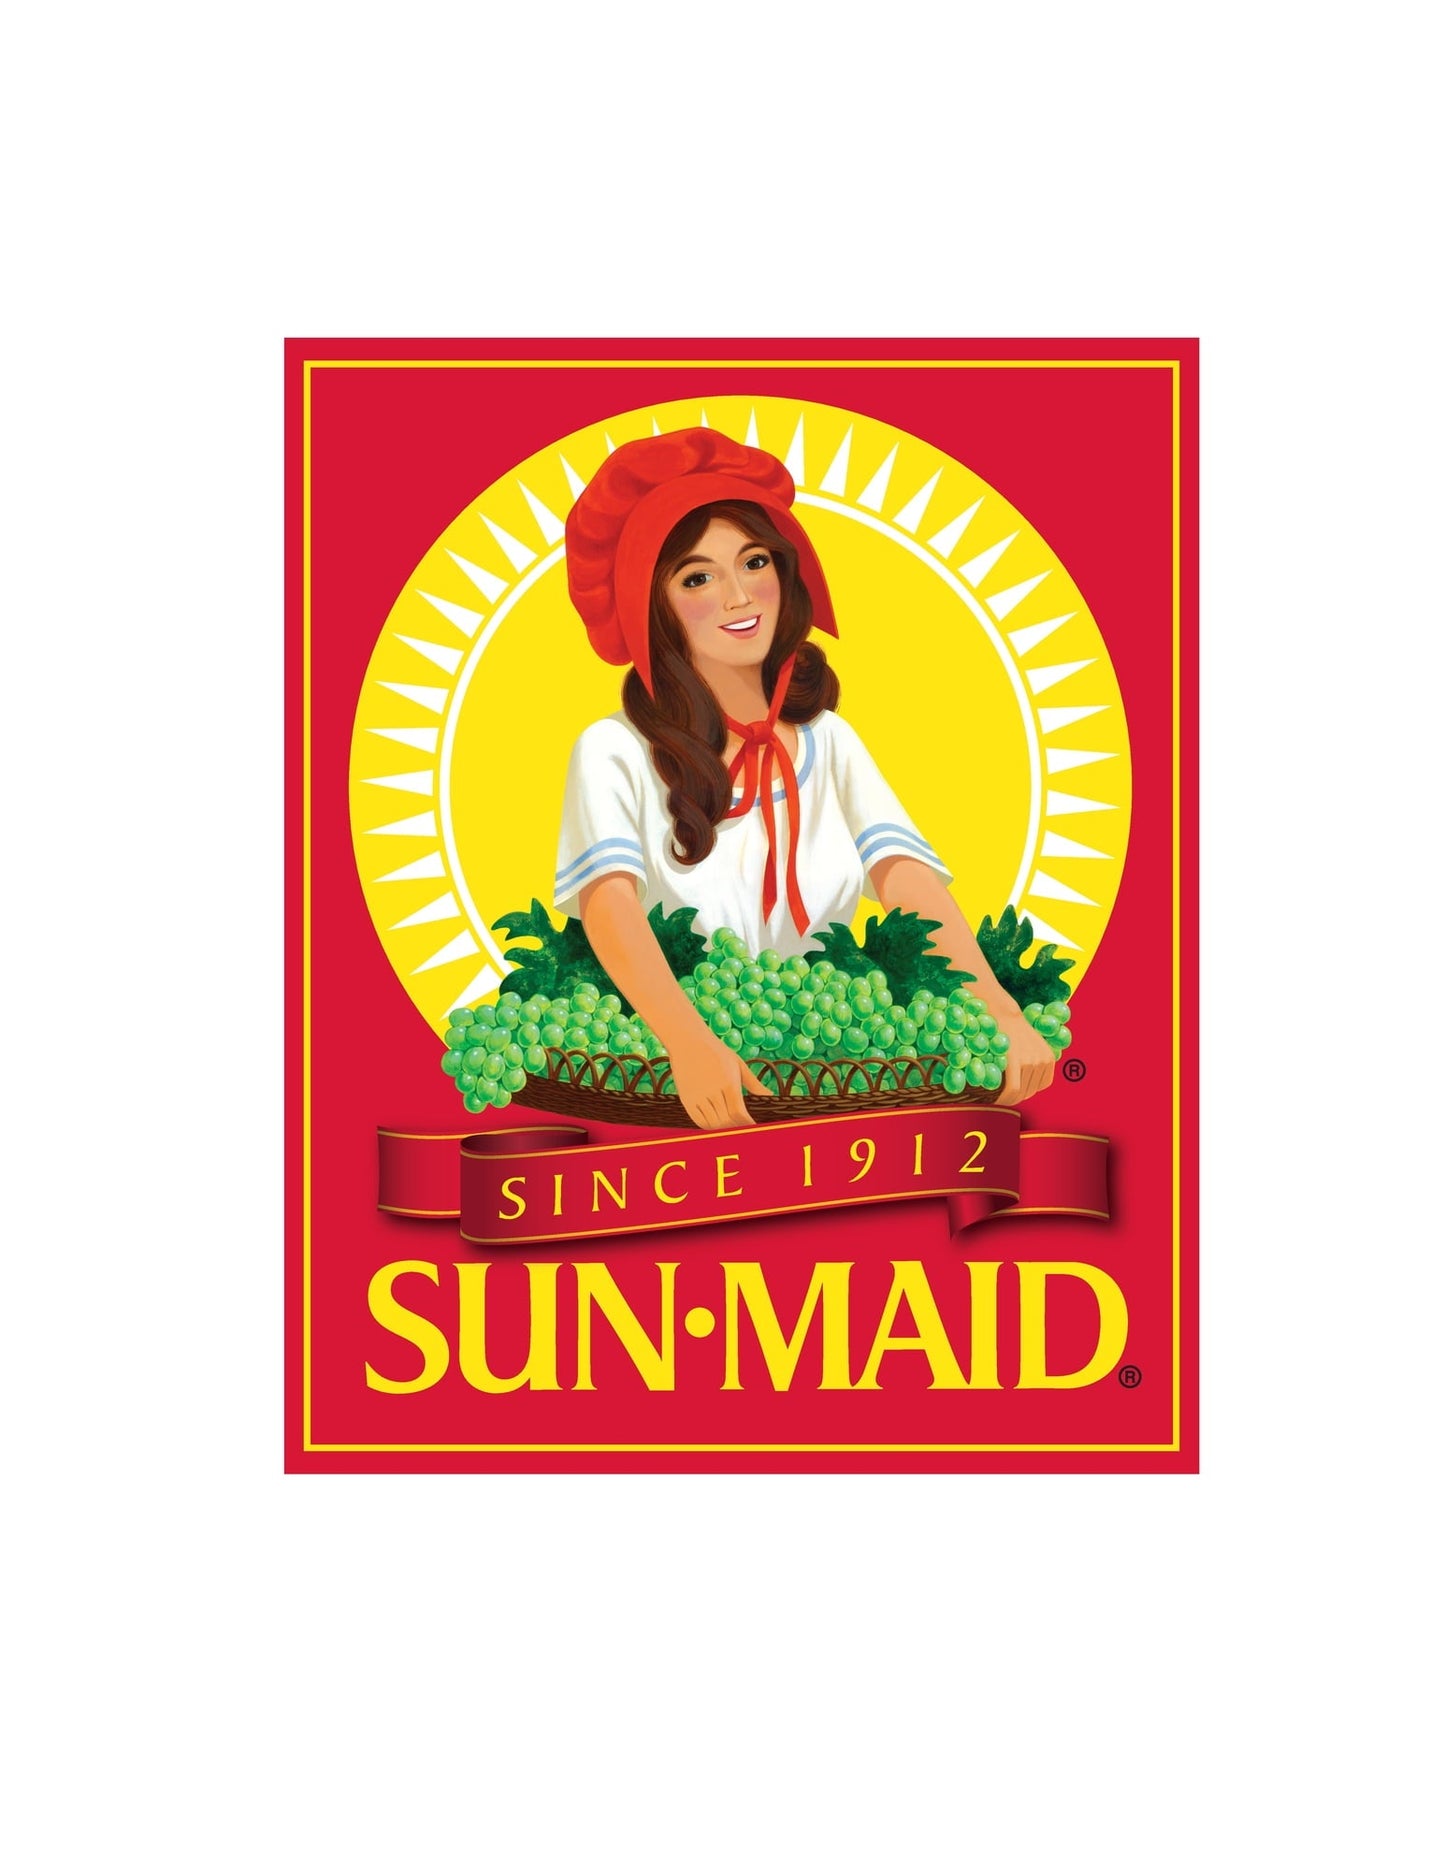 Sun-Maid California Sun-Dried Raisins, Dried Fruit Snack, 10 oz Bag